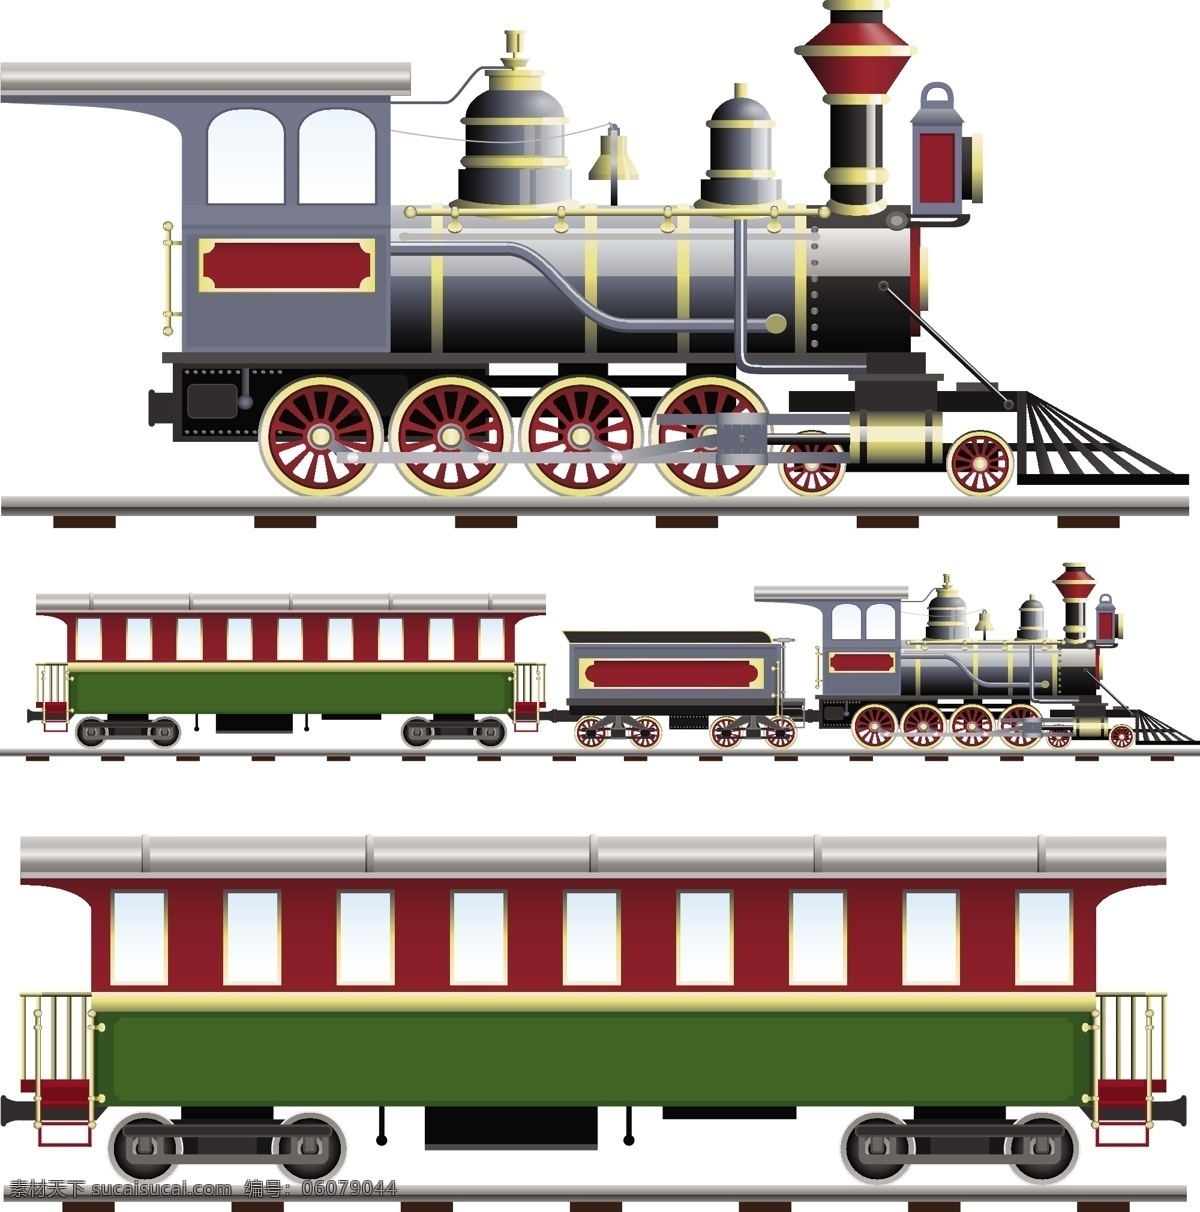 矢量 蒸汽 火车 设计素材 火车设计 矢量火车 蒸汽火车 图标 图标设计 矢量图标 立体图标 矢量素材 交通工具 现代科技 白色